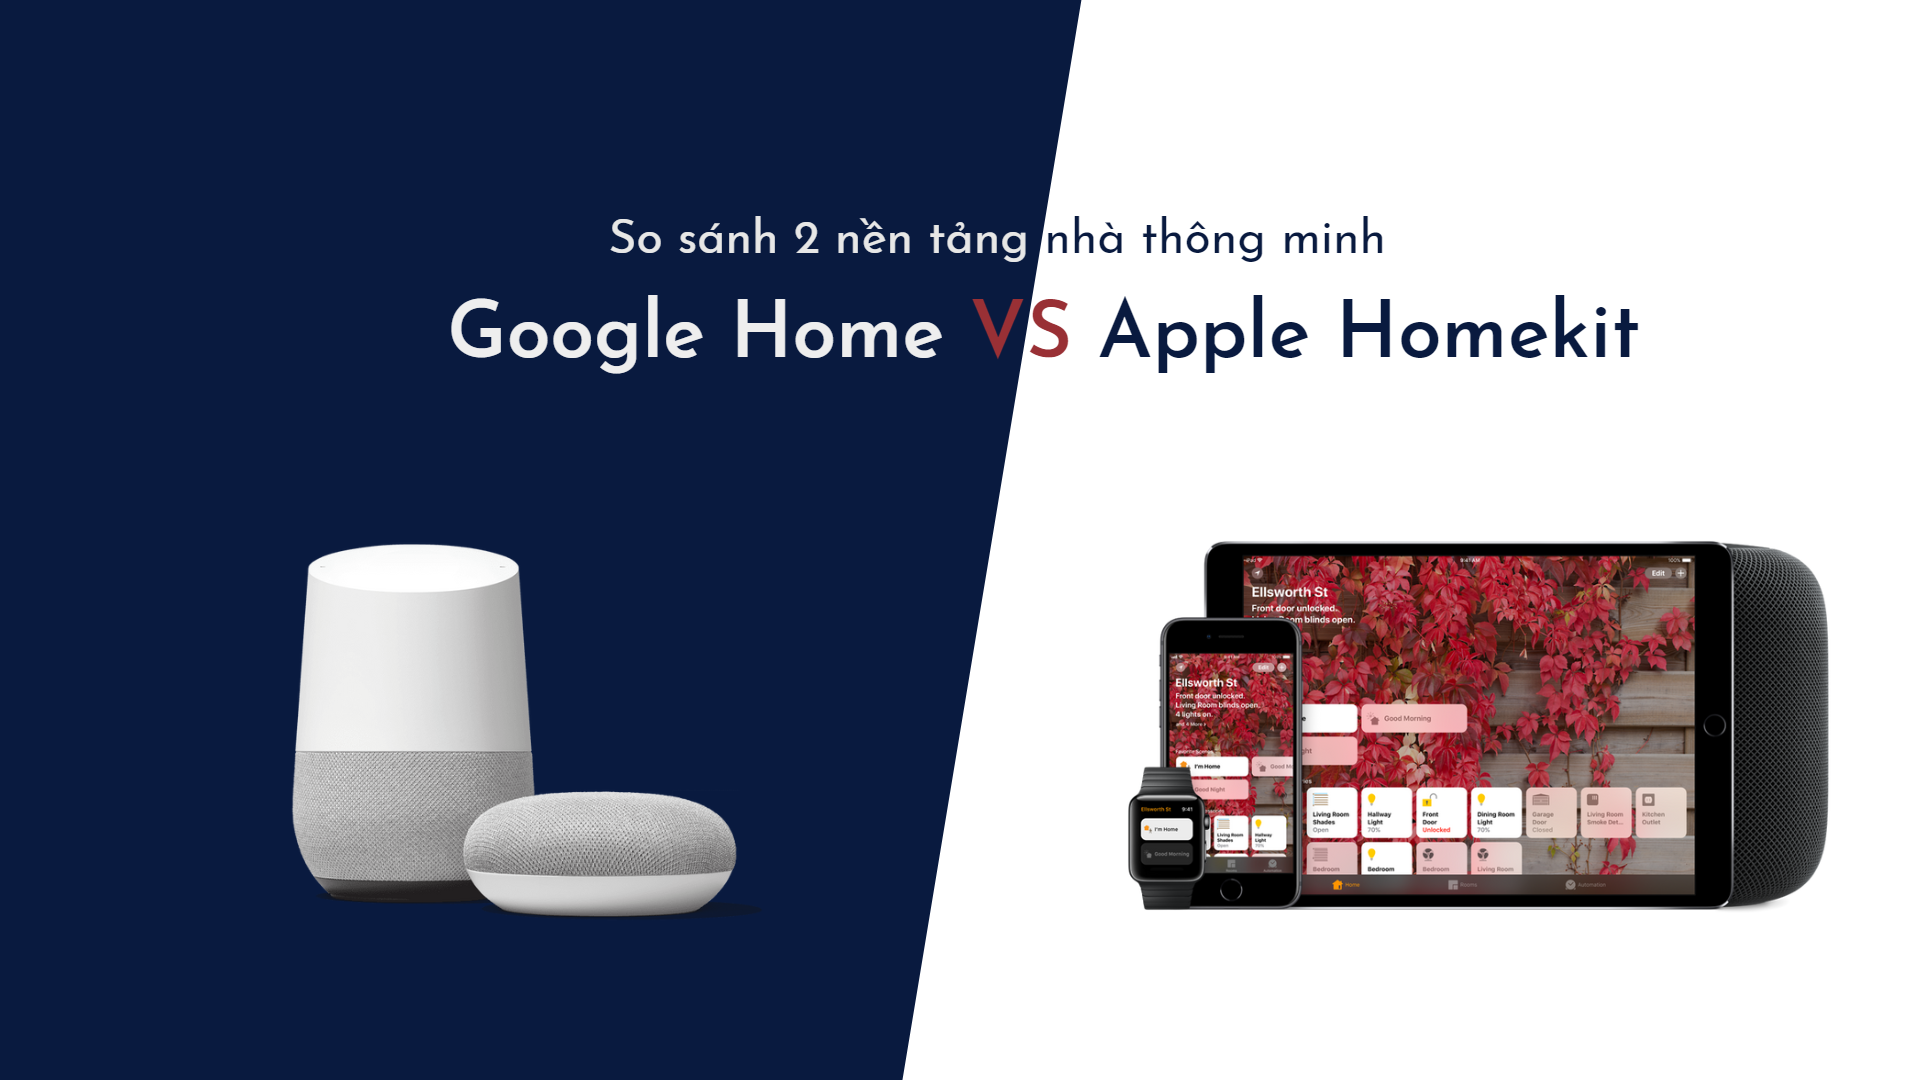 So sánh 2 nền tảng nhà thông minh: Apple Homekit với Google Home